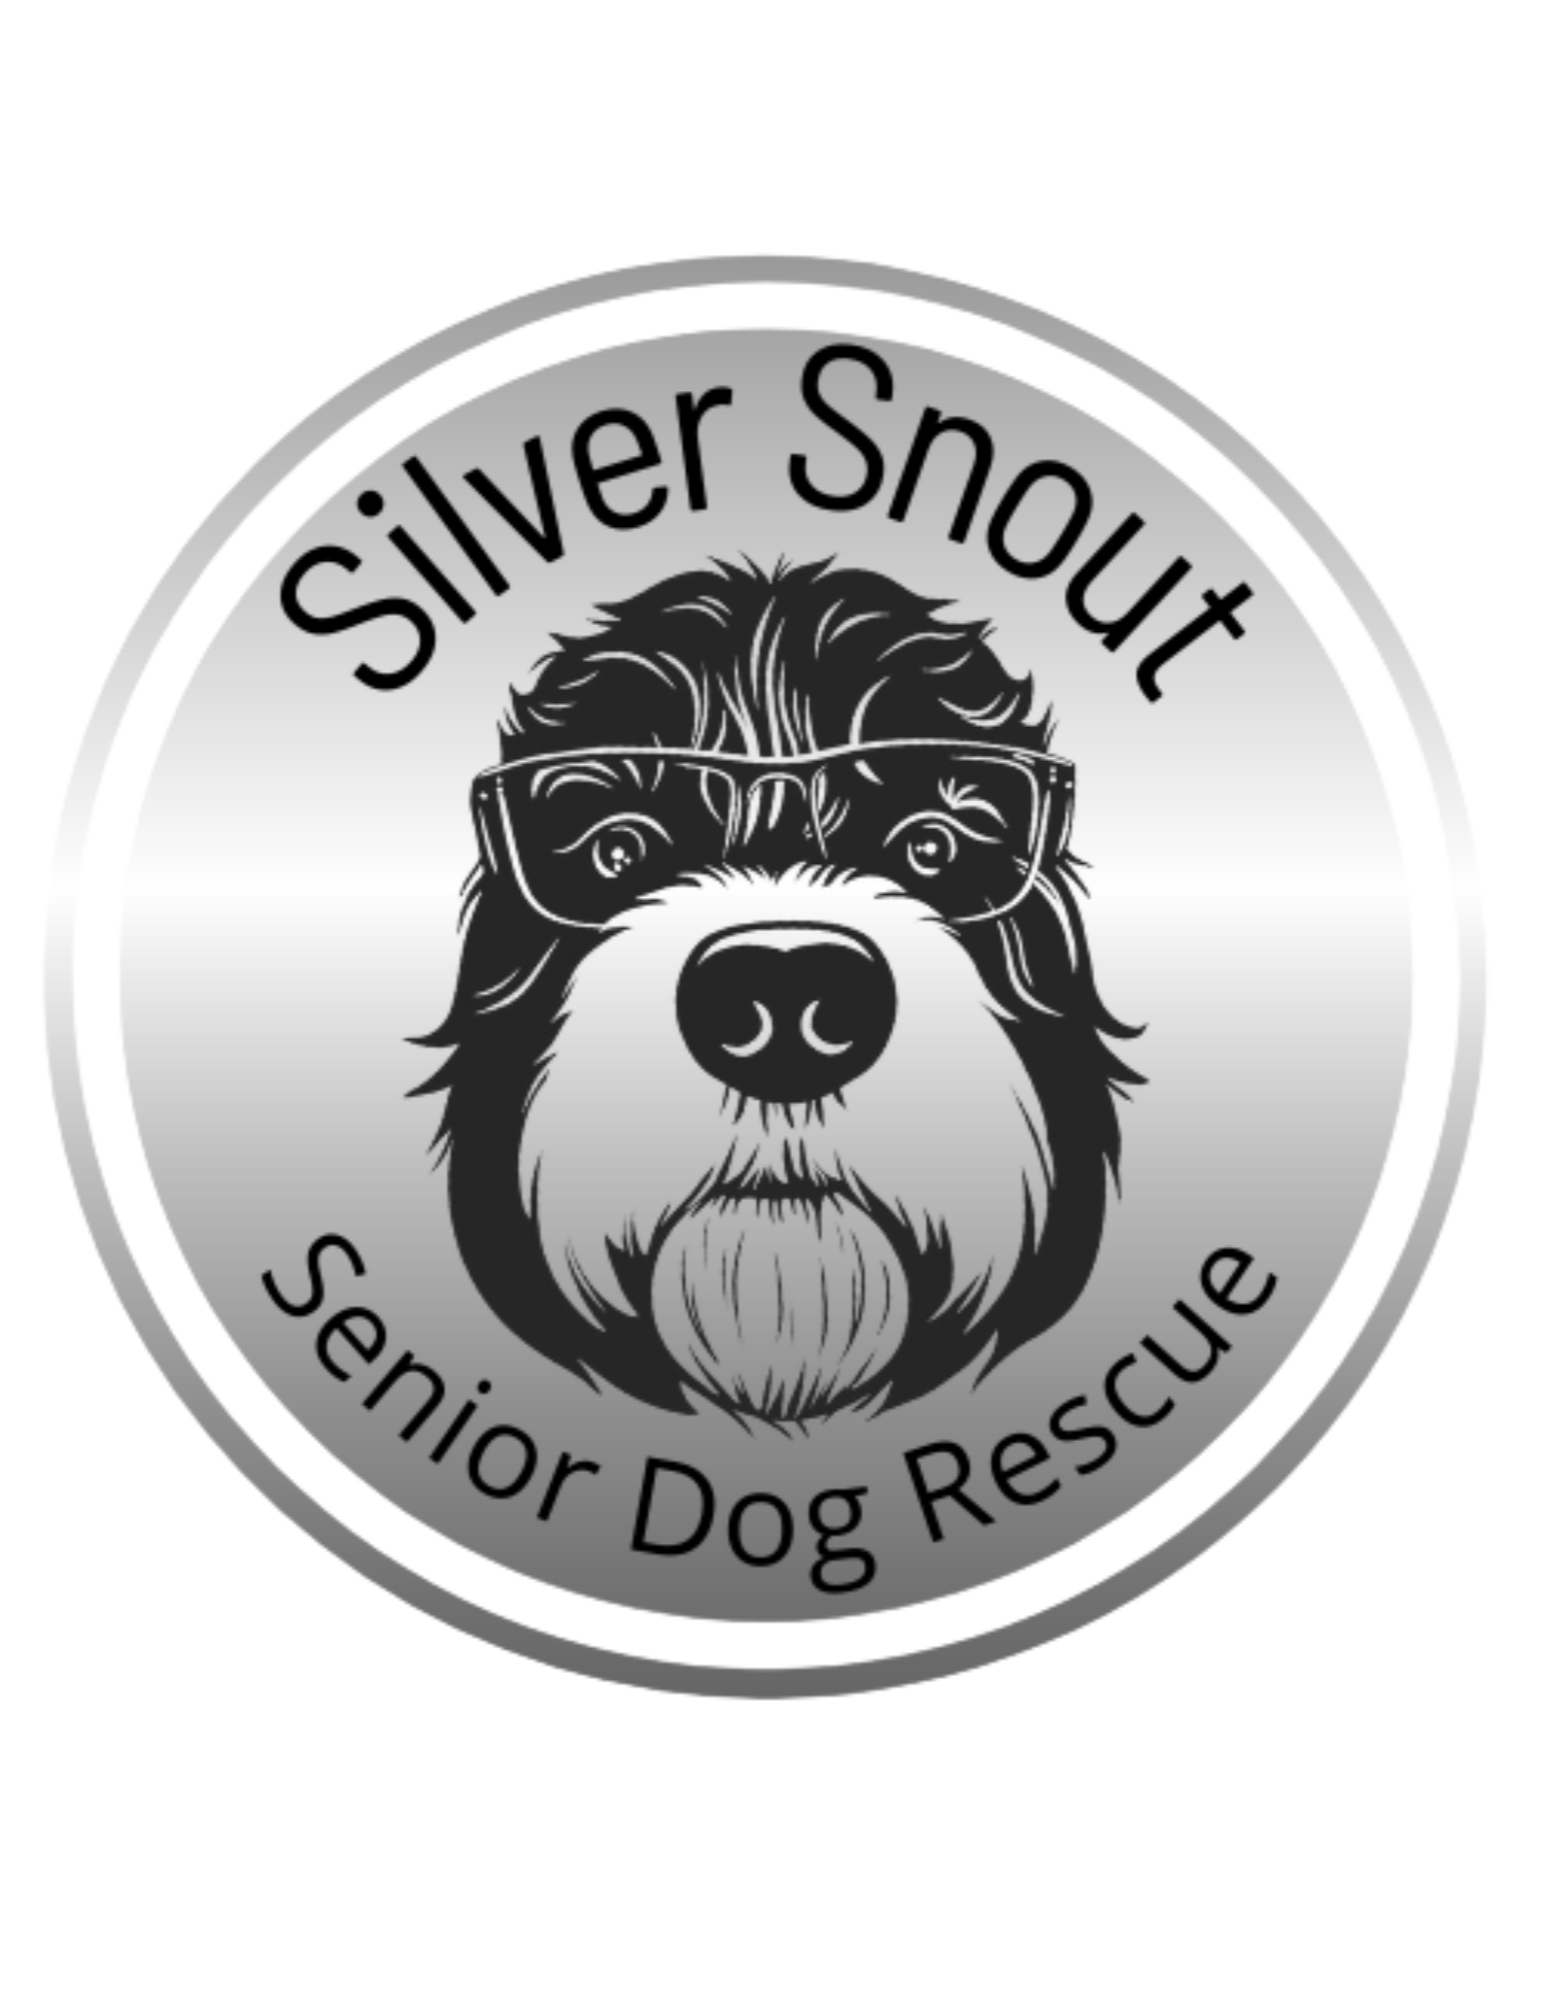 Silver Snout Senior Dog Rescue logo